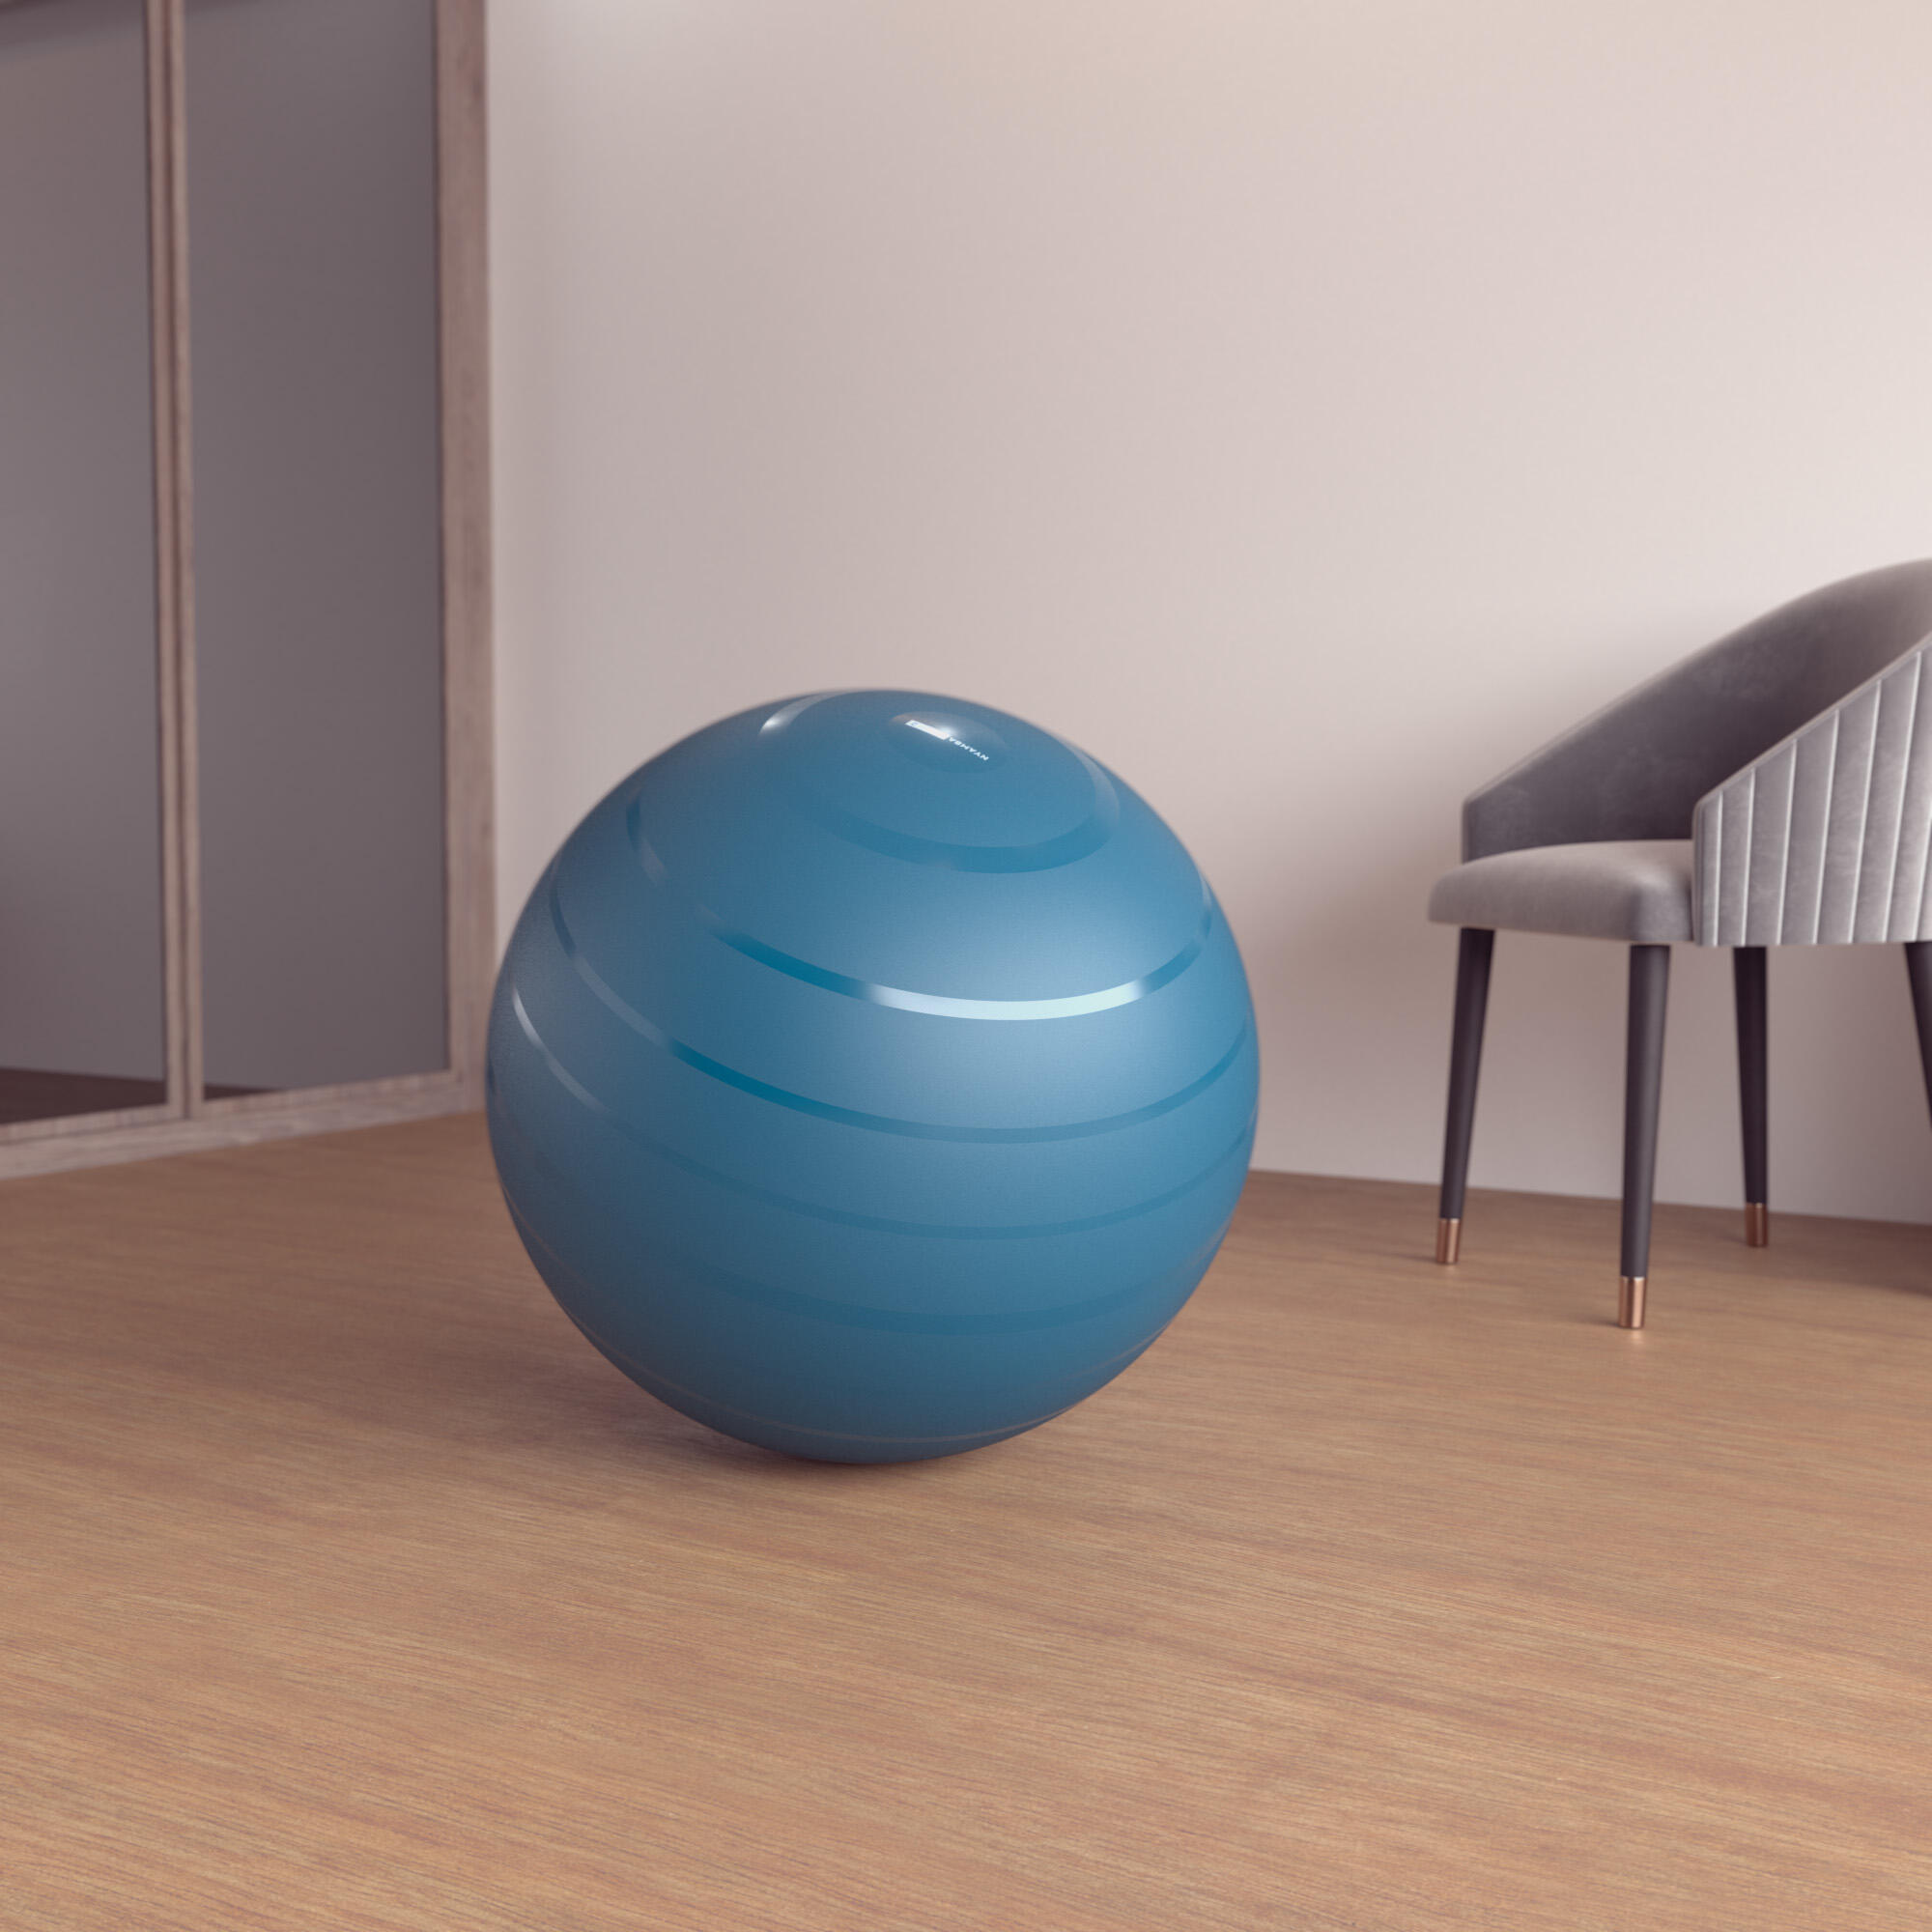 Фитнес-мяч размер 2 / 65 см - бирюзовый DOMYOS, темный бензин/темный бензин/голубой лед мороз д о шпагат дома растяжка фитнес